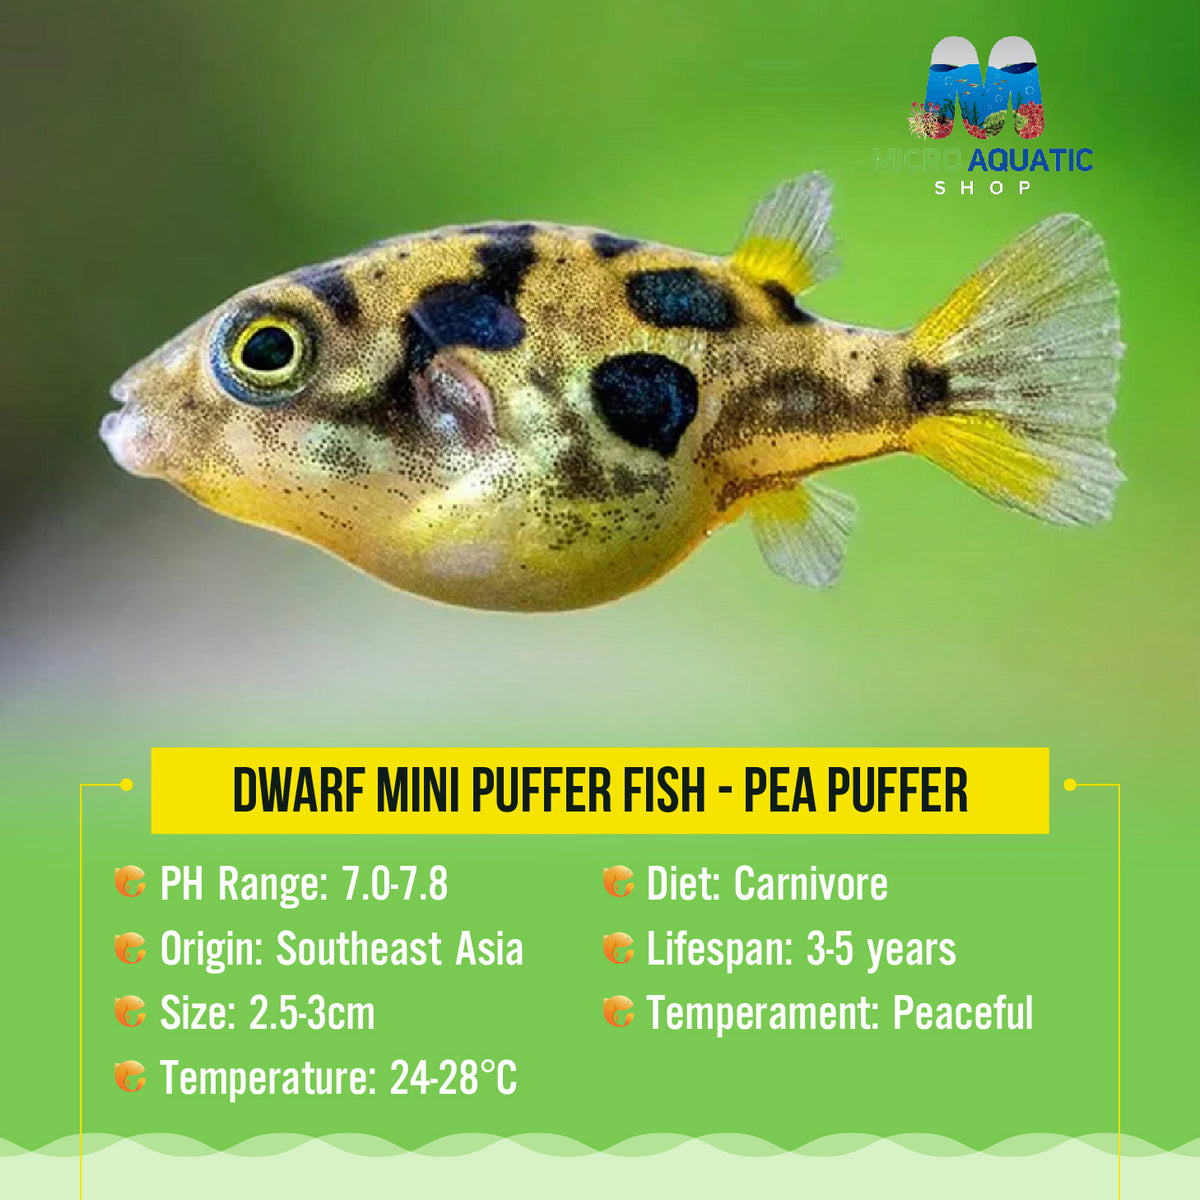 Dwarf Mini Puffer Fish - Pea Puffer